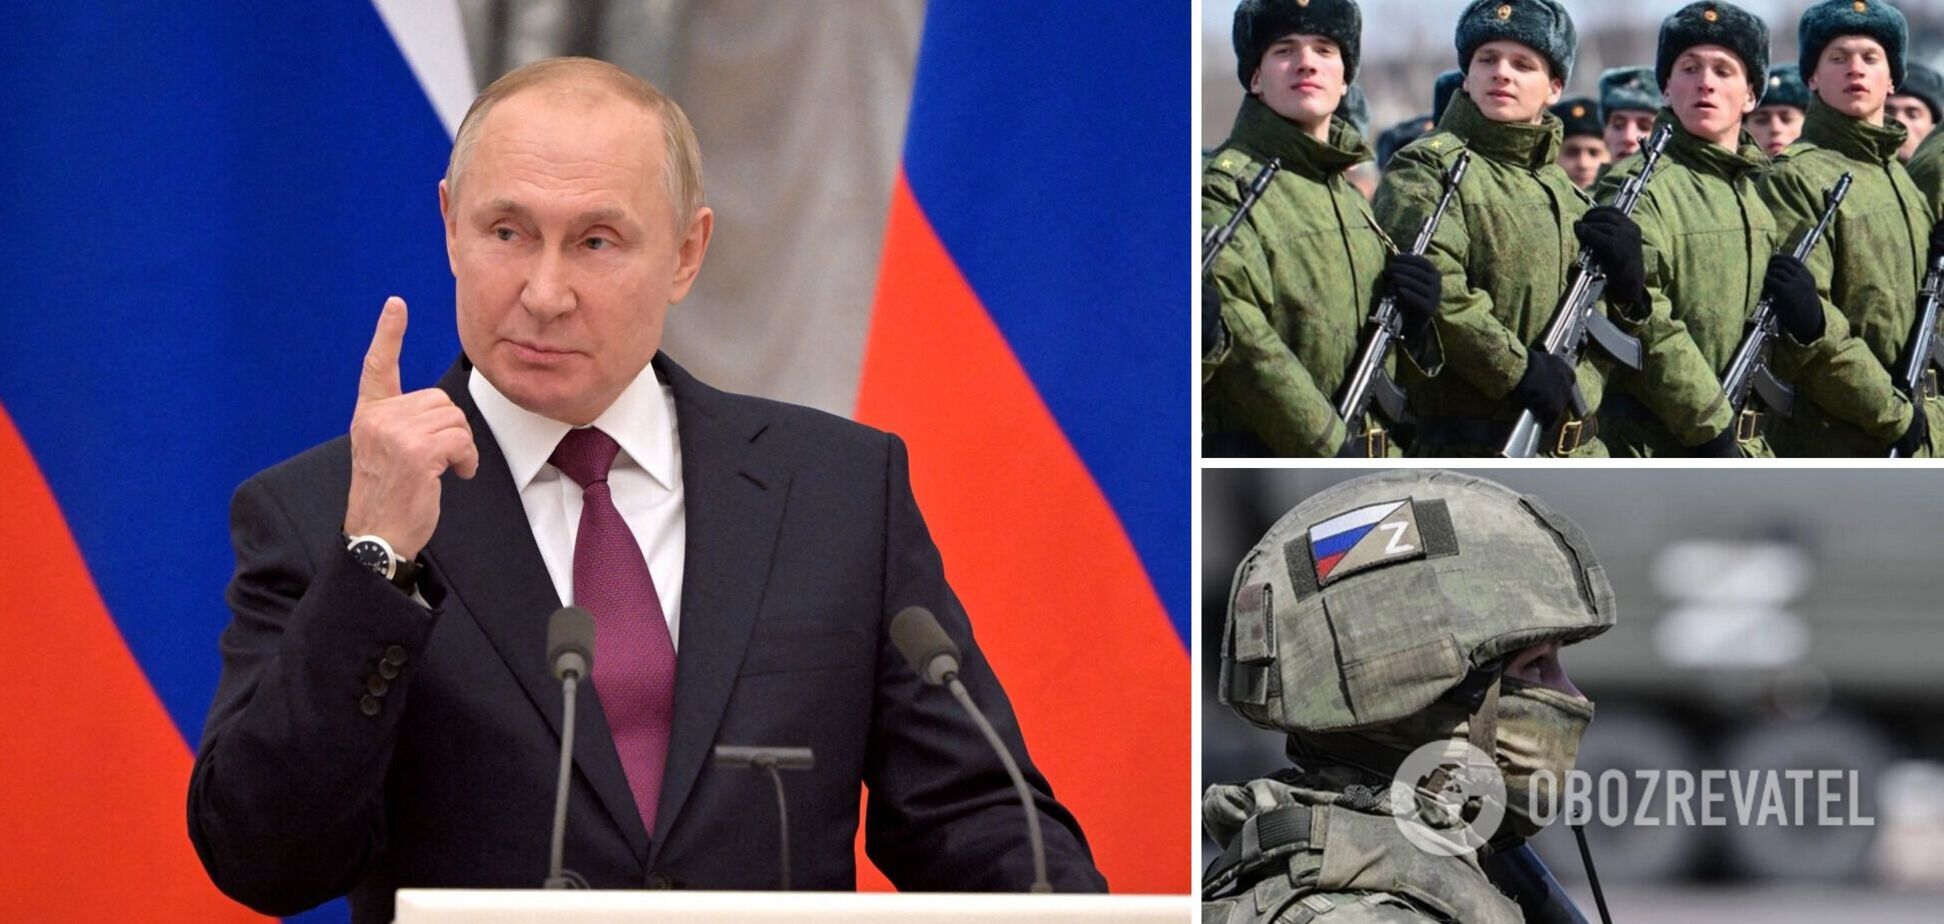 'Нас водили за носа': Путін пояснив, чому не почав повномасштабну війну проти України в 2014 році, і поскаржився на обман. Відео 